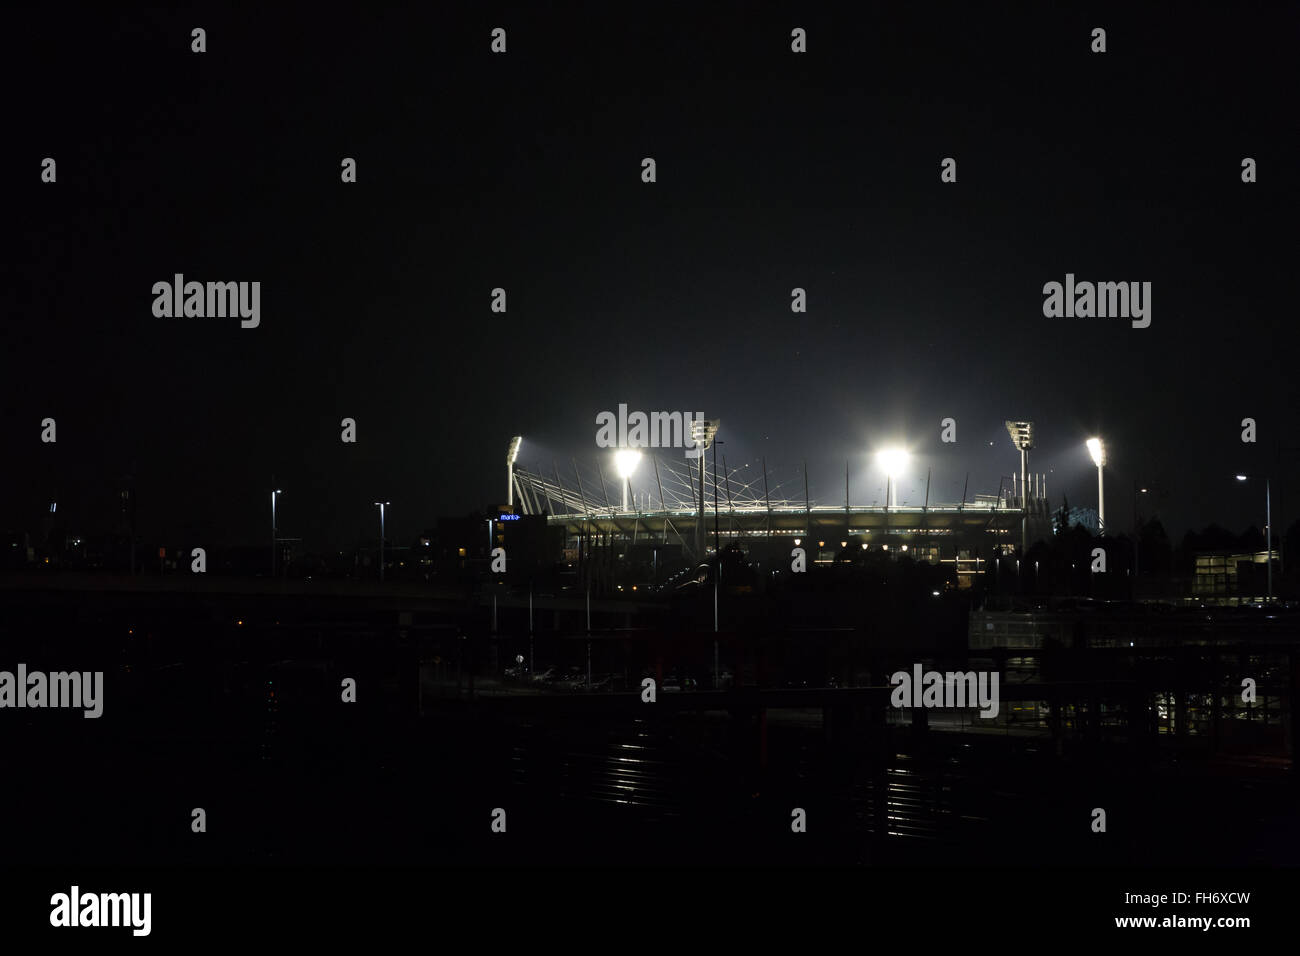 Melbourne, Australien - 24. April 2015: Melbourne Cricket Ground bei Nacht beleuchtet für ein Spiel. Stockfoto